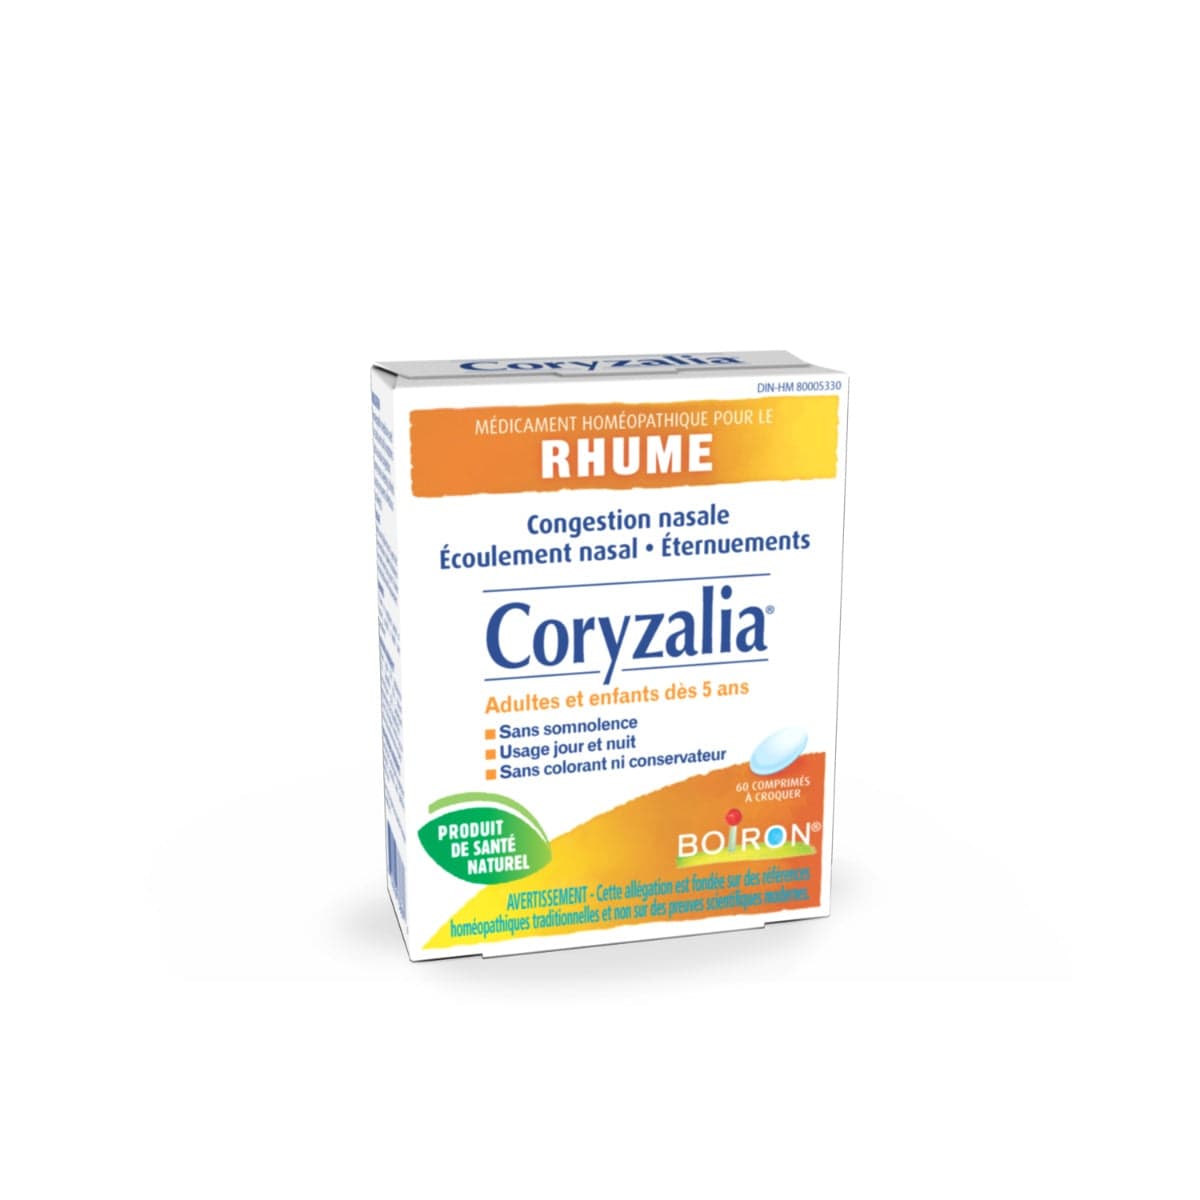 BOIRON LABORATOIRE Suppléments Coryzalia (rhume et congestion) 60comp